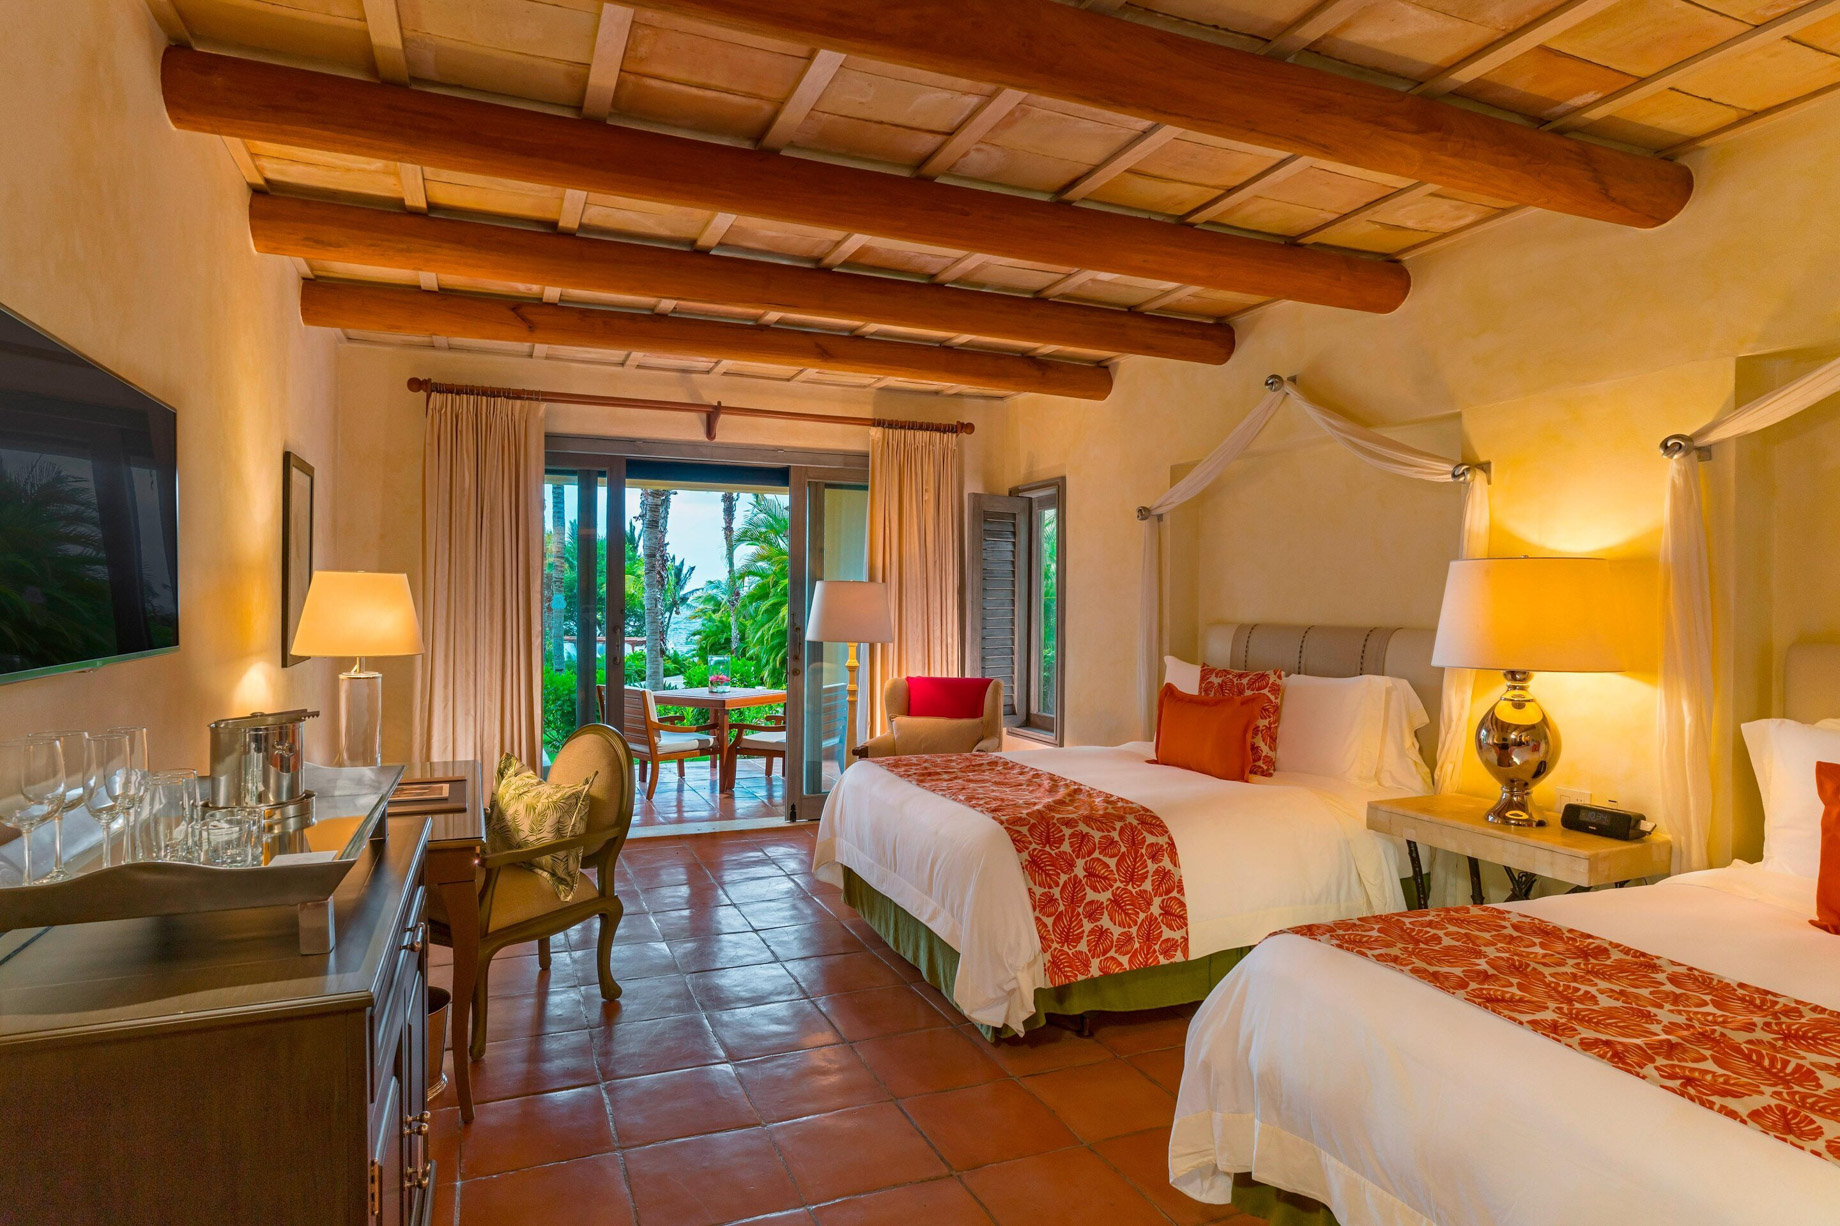 The St. Regis Punta Mita Resort - Nayarit, Mexico - Deluxe Queen Guest Room